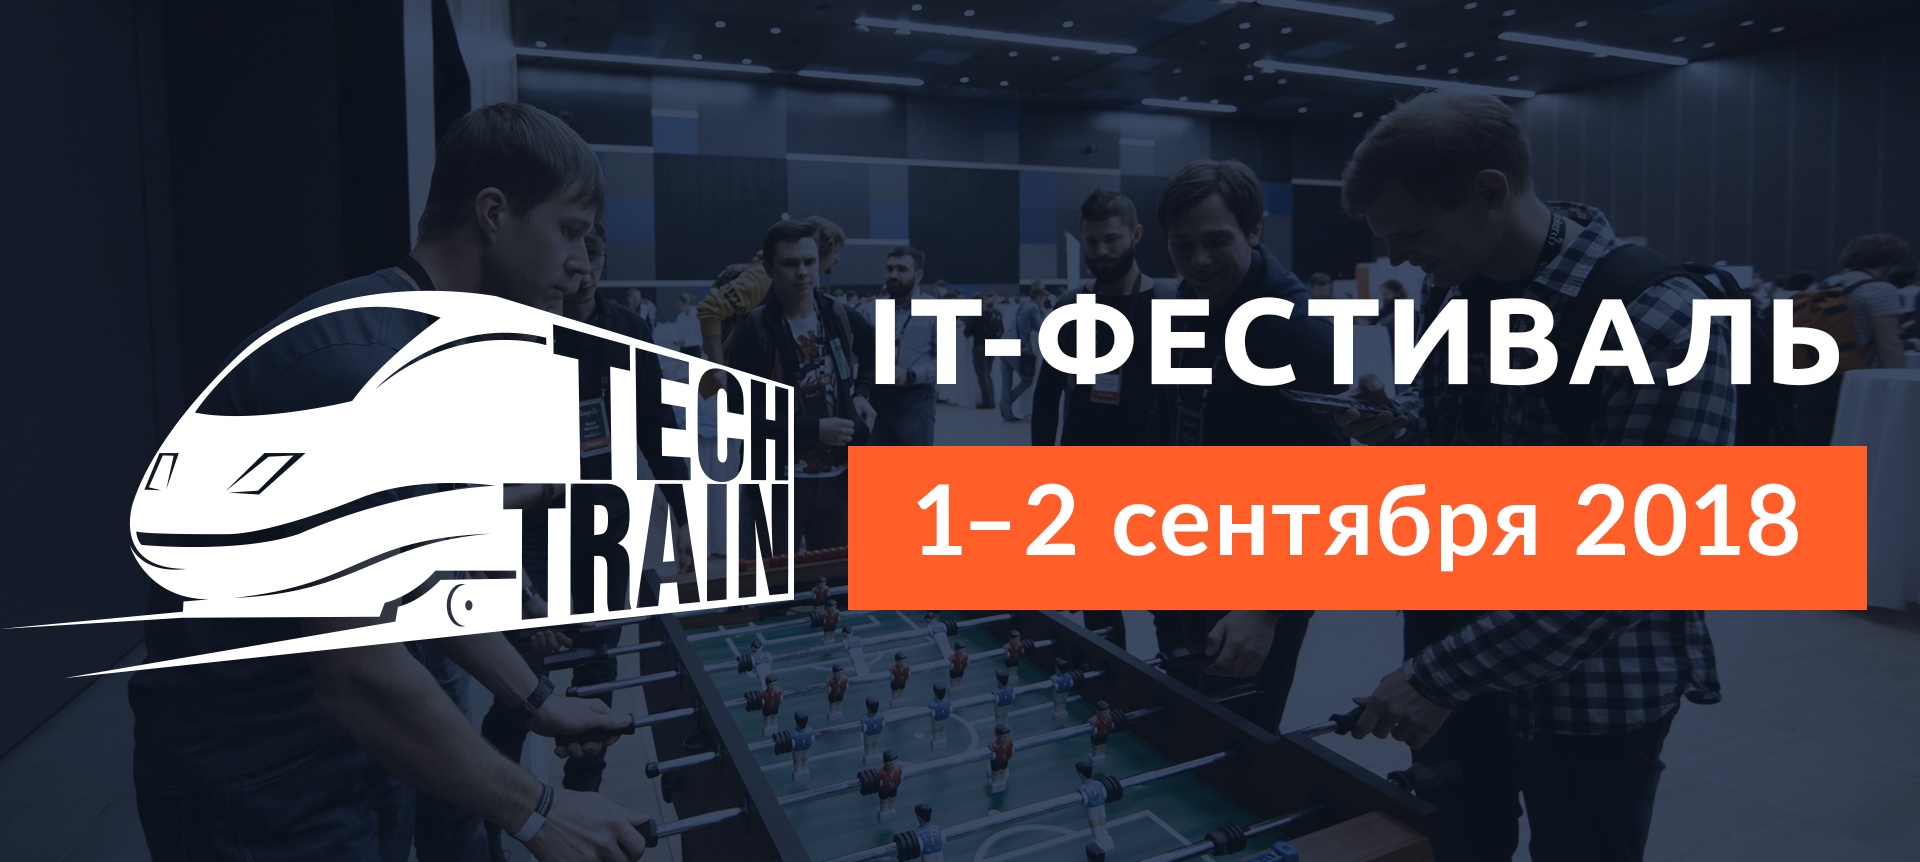 IT-фестиваль TechTrain